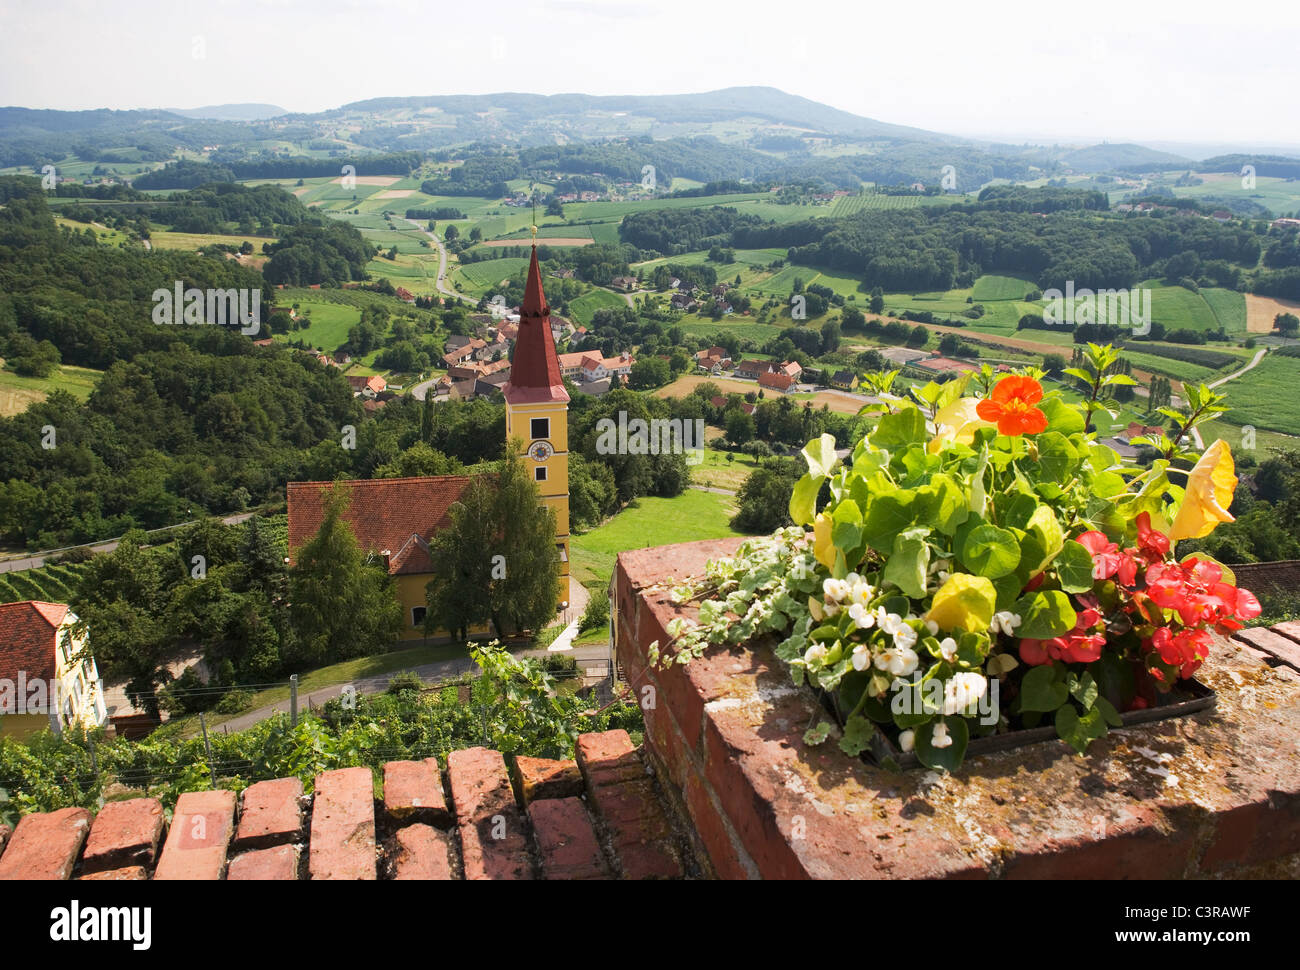 Austria, Styria, Kapfenstein, Suedsteirisches Weinland, View of church in rural scene Stock Photo